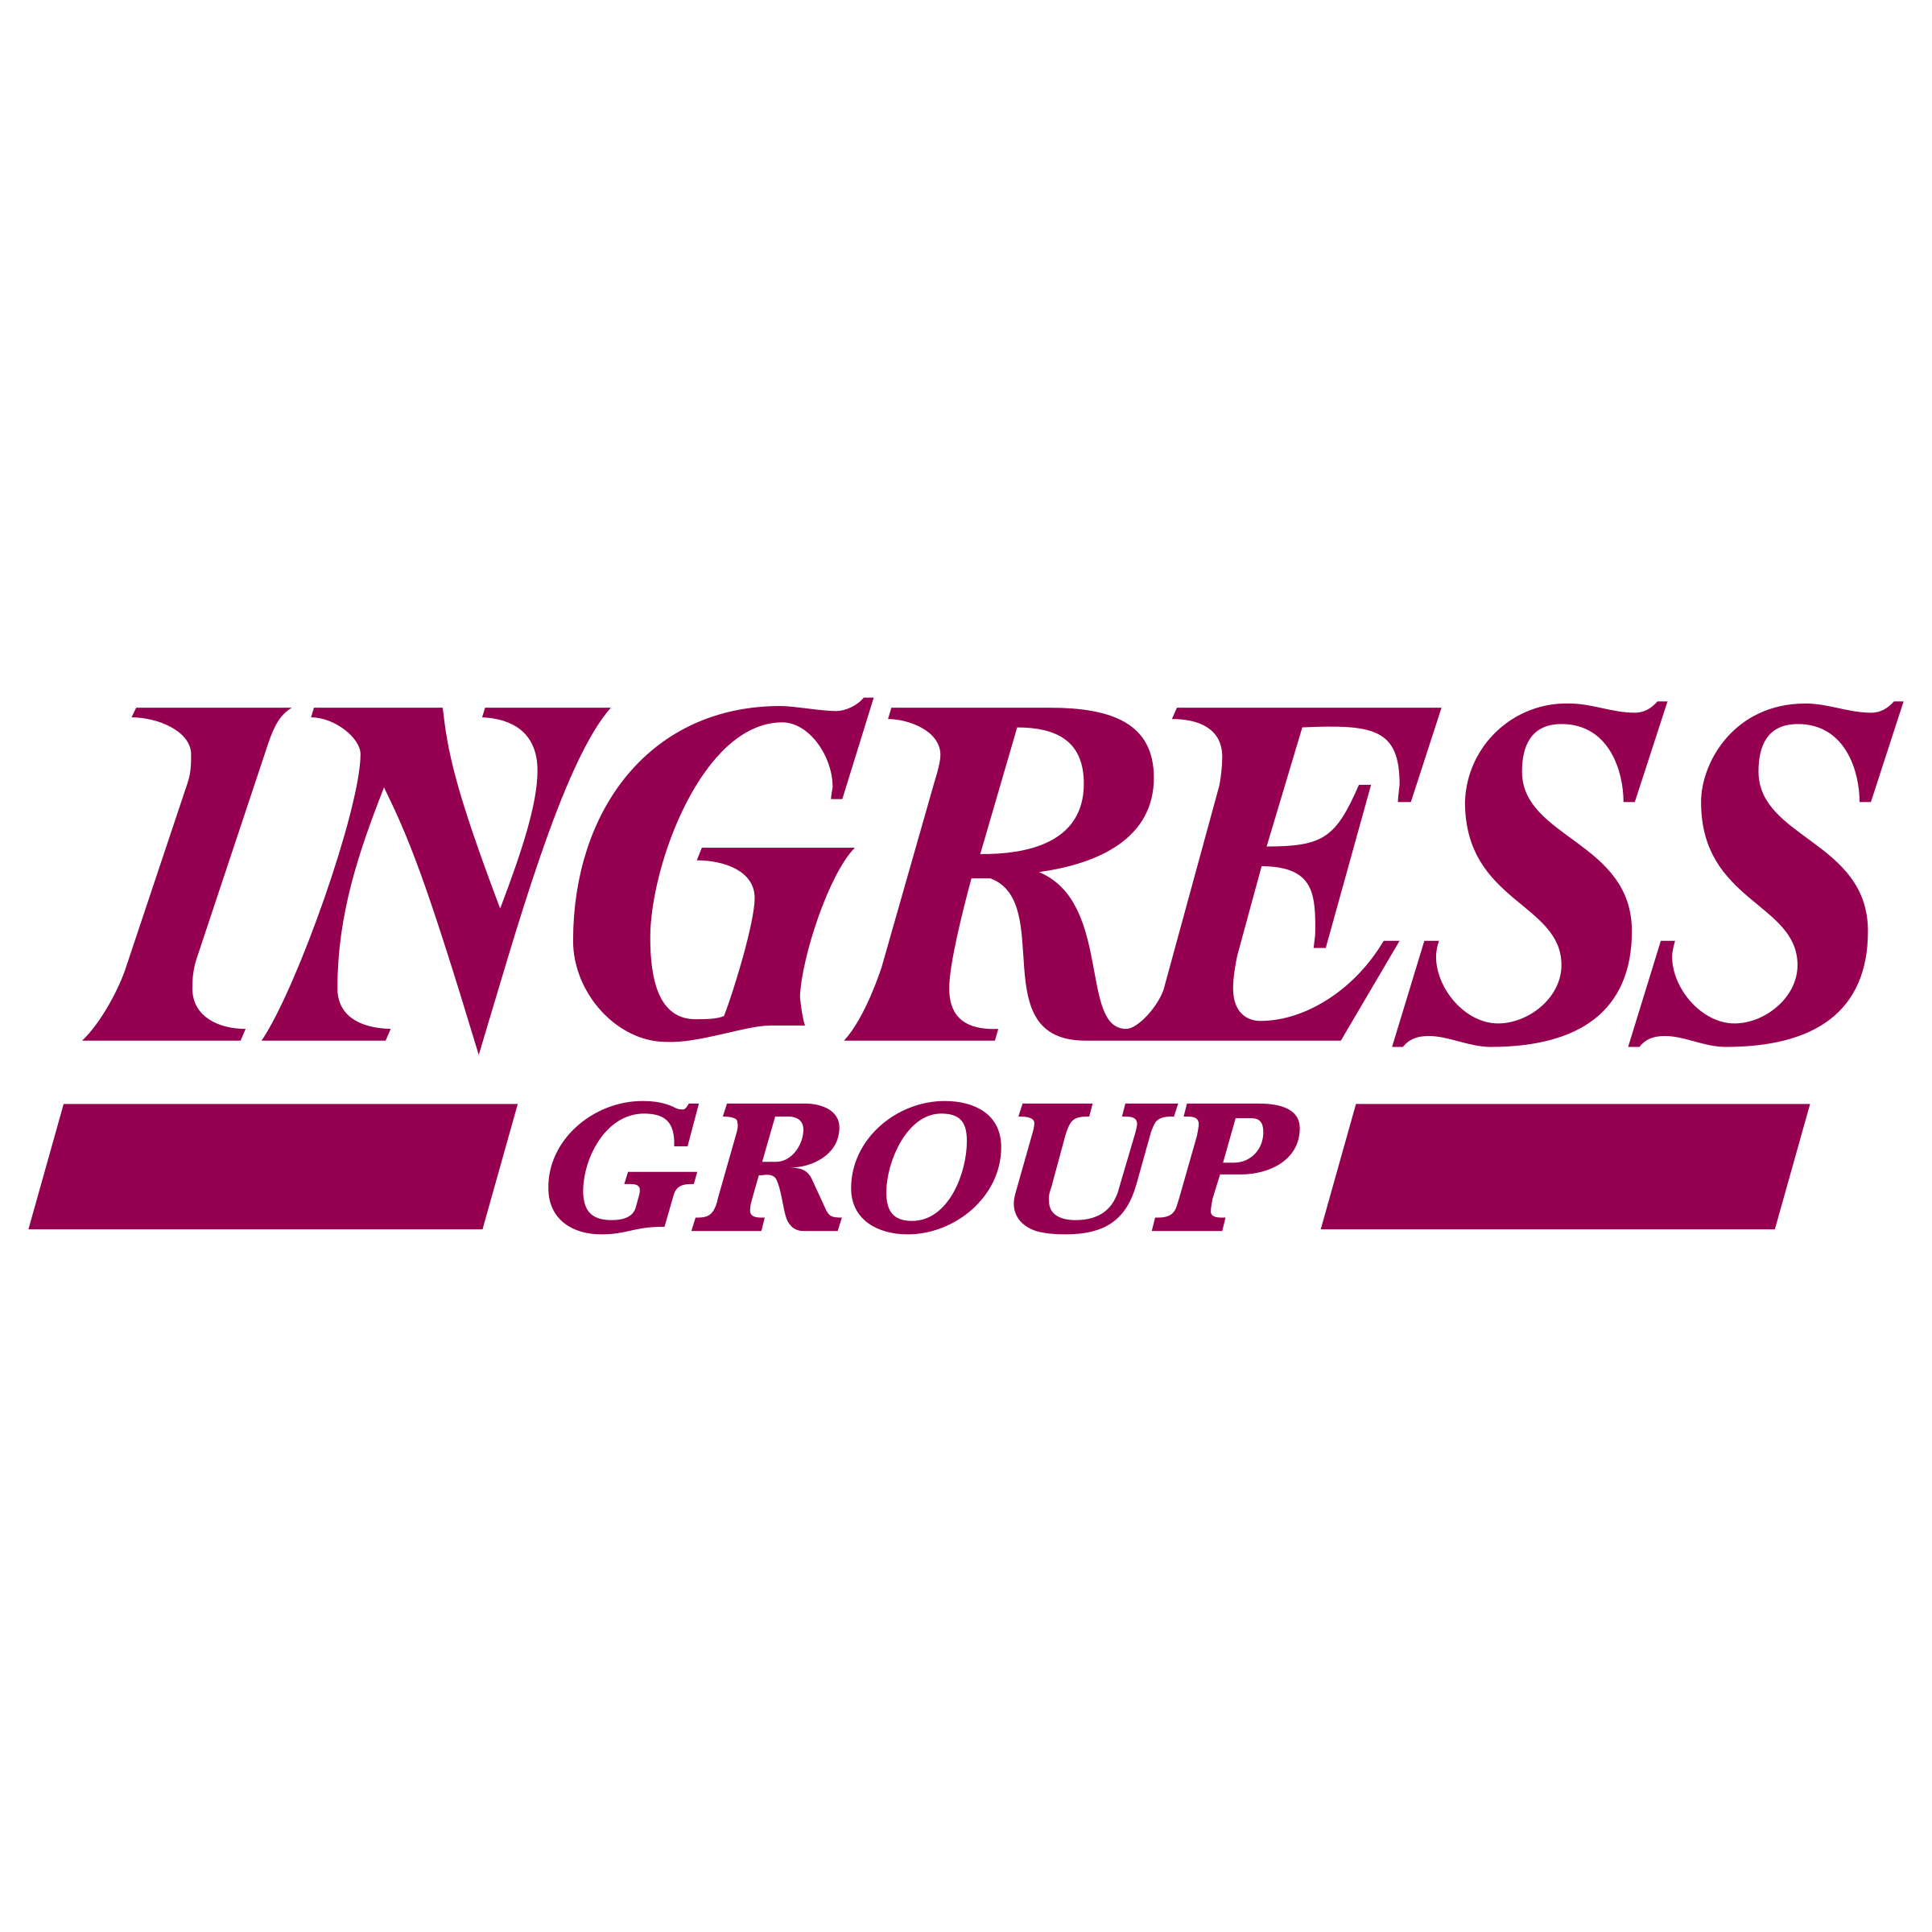 Intrawest Logo - Ingress Group Logo PNG Transparent & SVG Vector - Freebie Supply